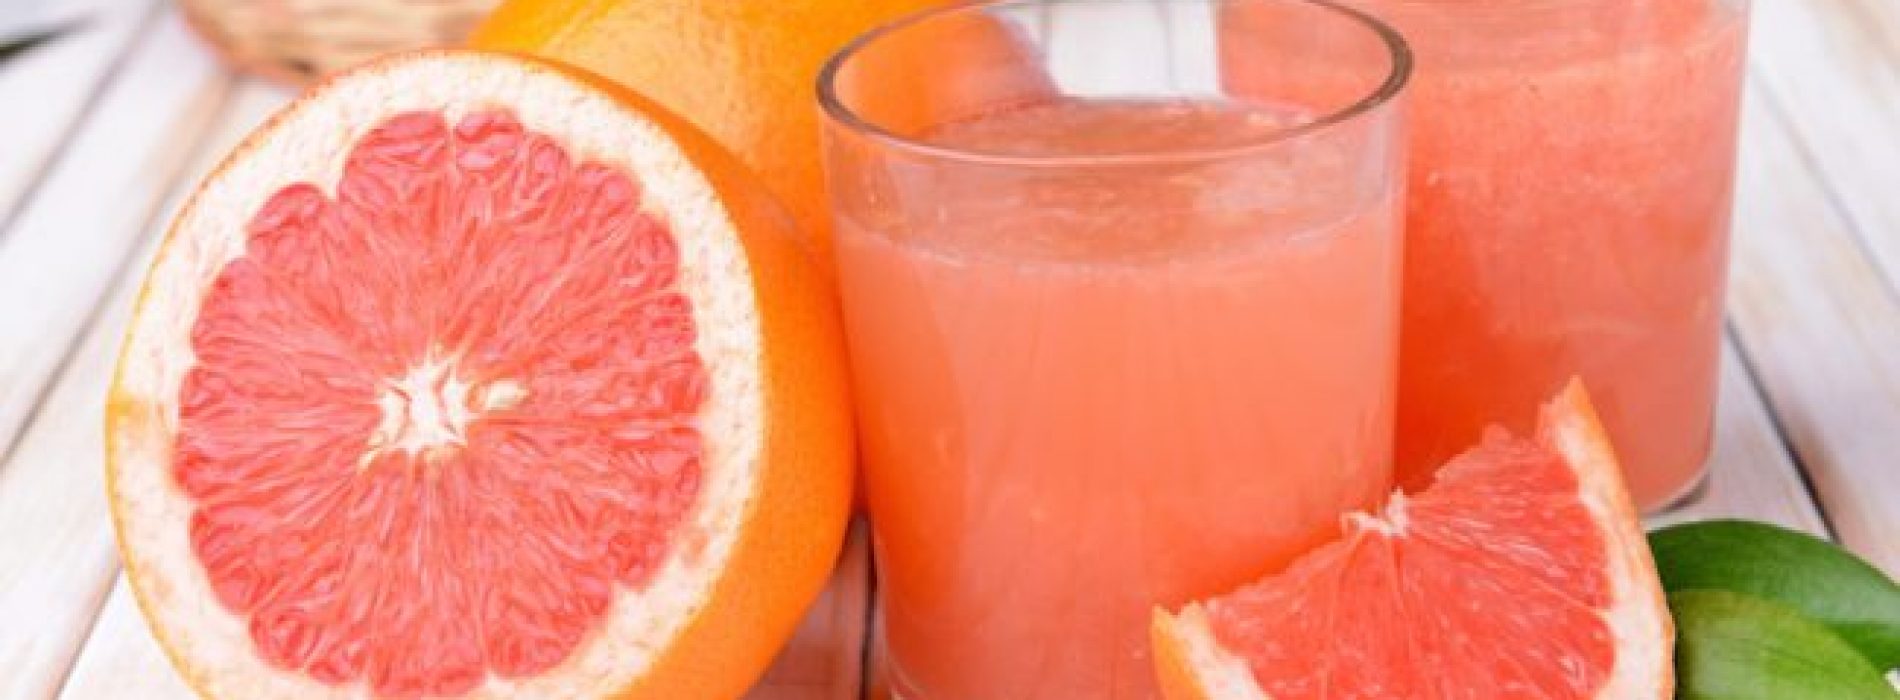 Grapefruitsap drinken vermindert de verharding van de slagaderen, voorkomt hartaandoeningen en beroertes